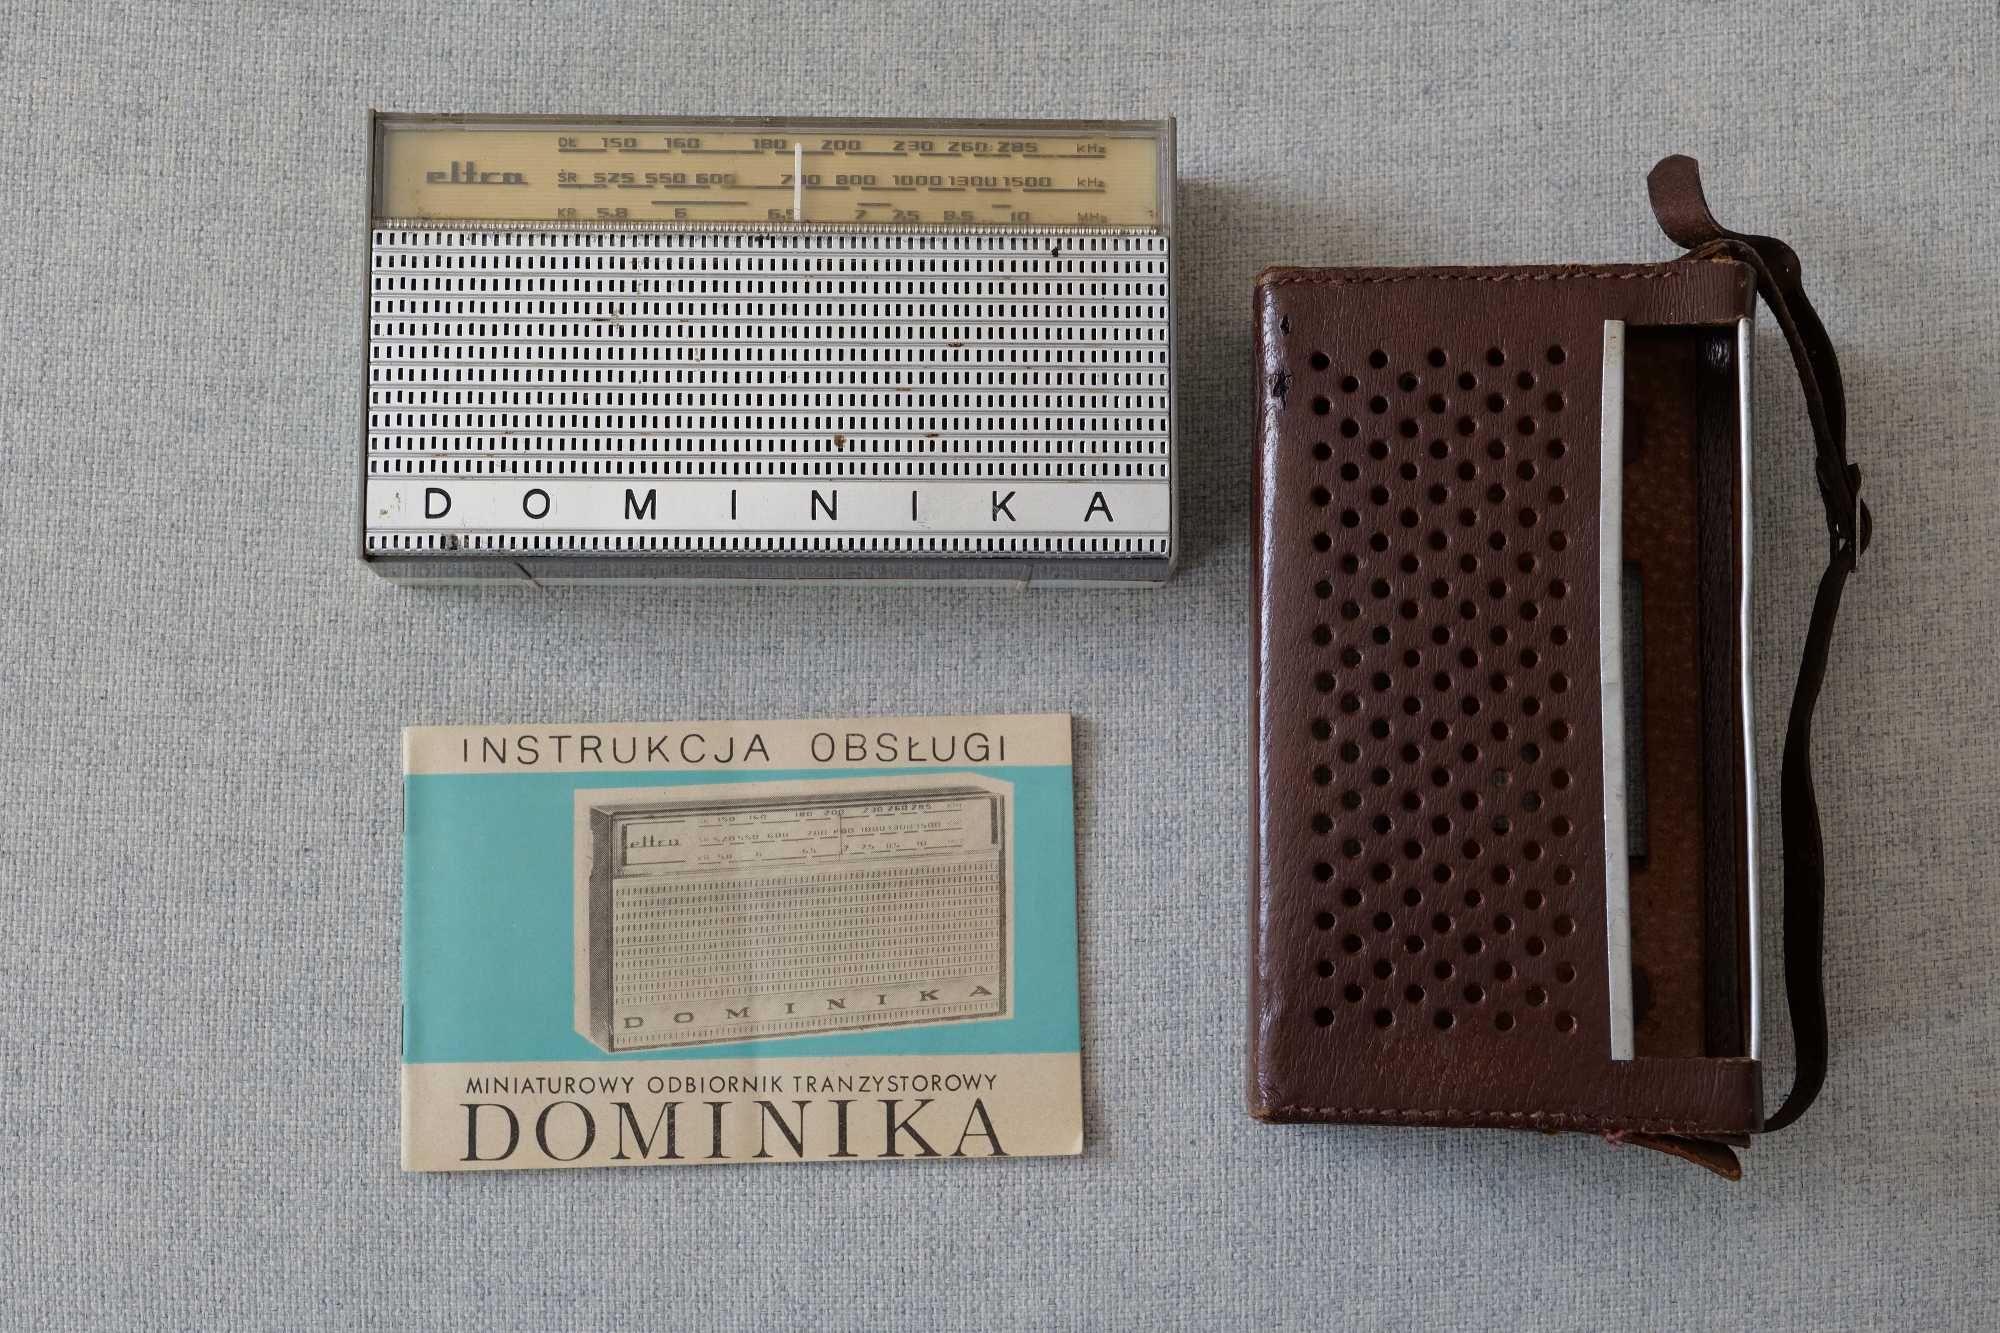 Radio Eltra Dominika z instrukcją. PRL.